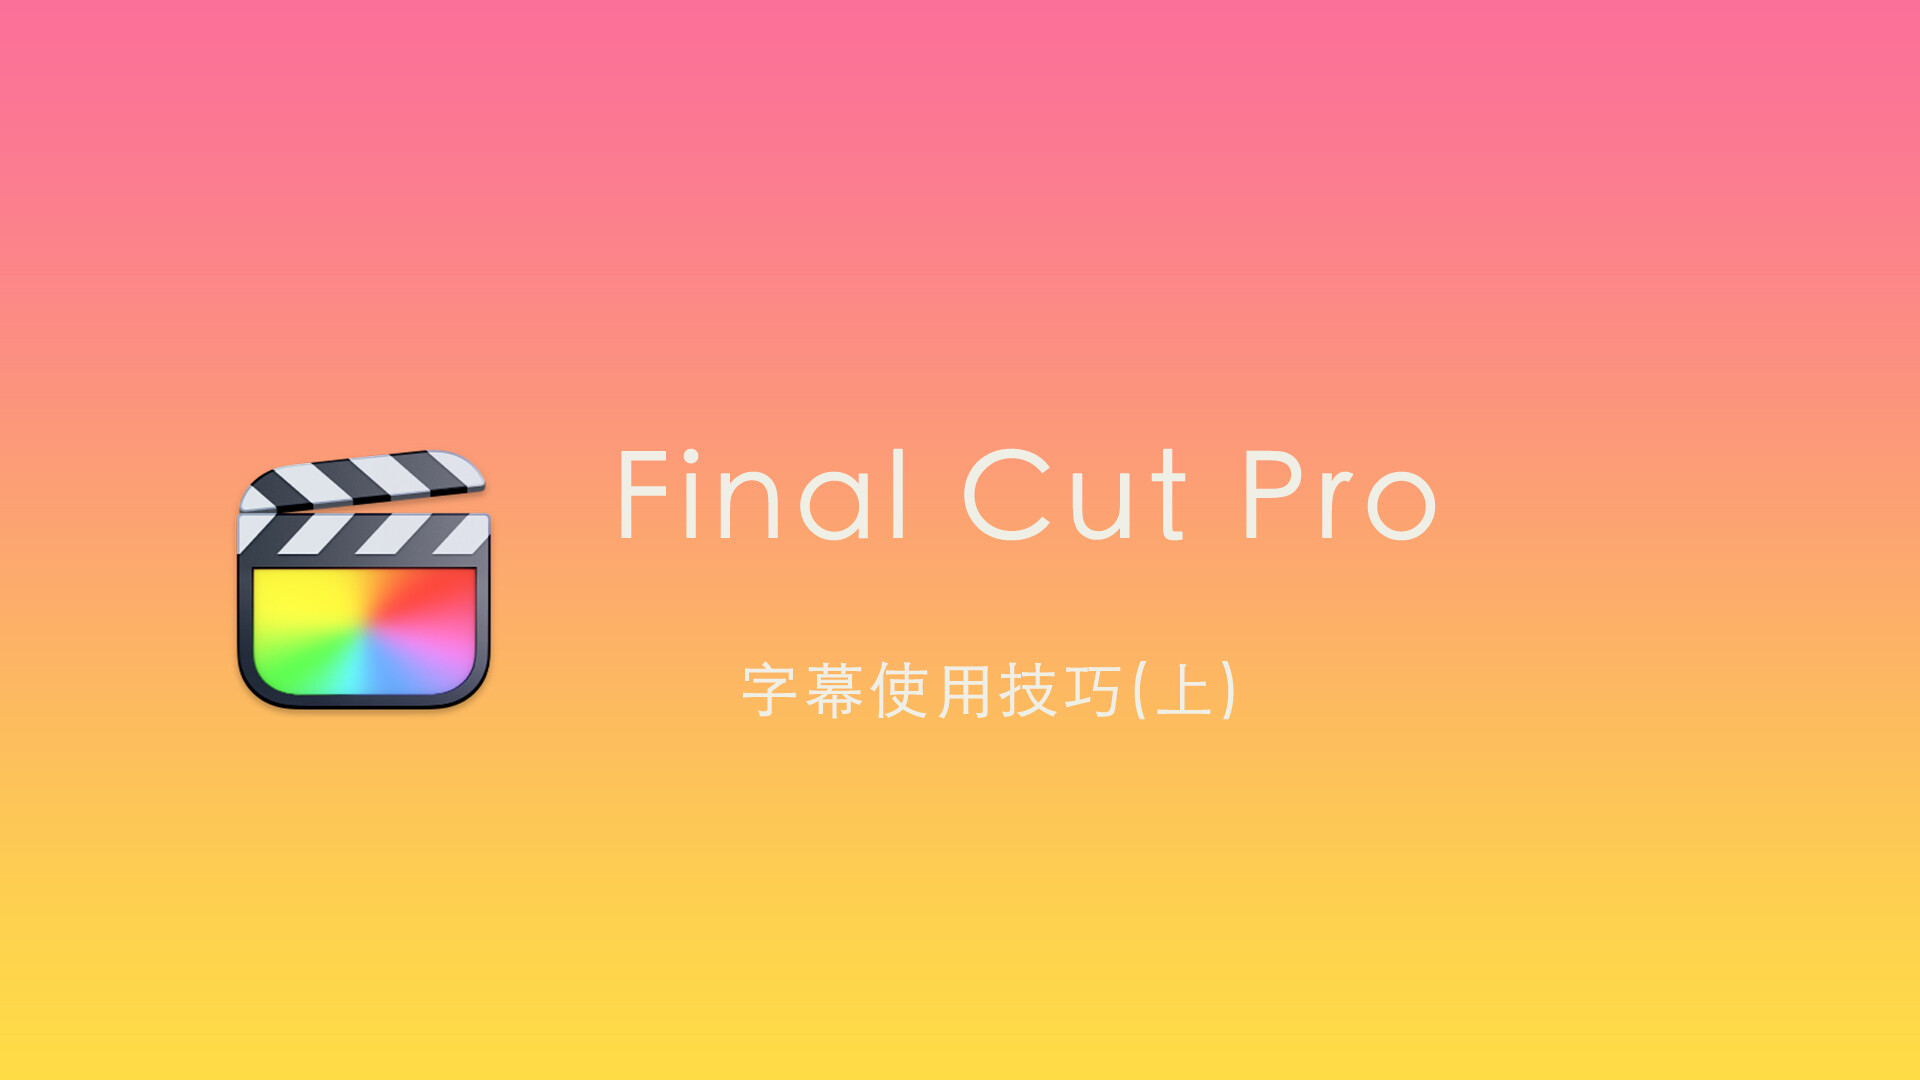 Final Cut Pro 中文字幕教程(61) 字幕技巧「上」